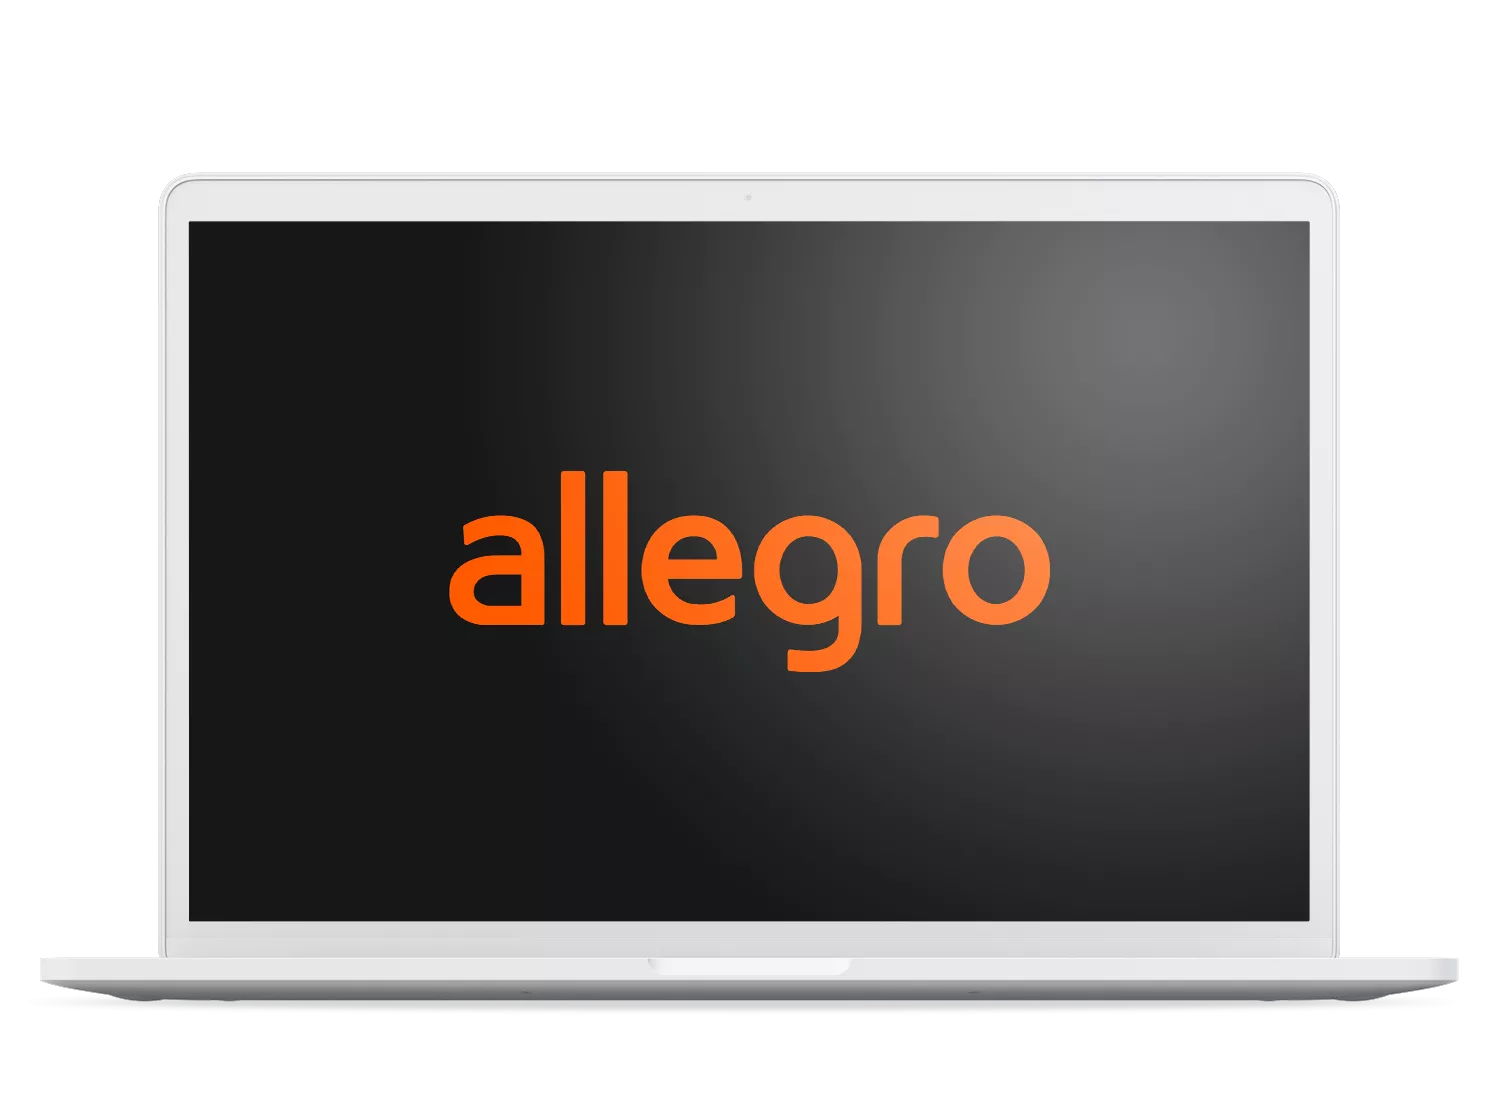 Allegro - Pixlab.pl